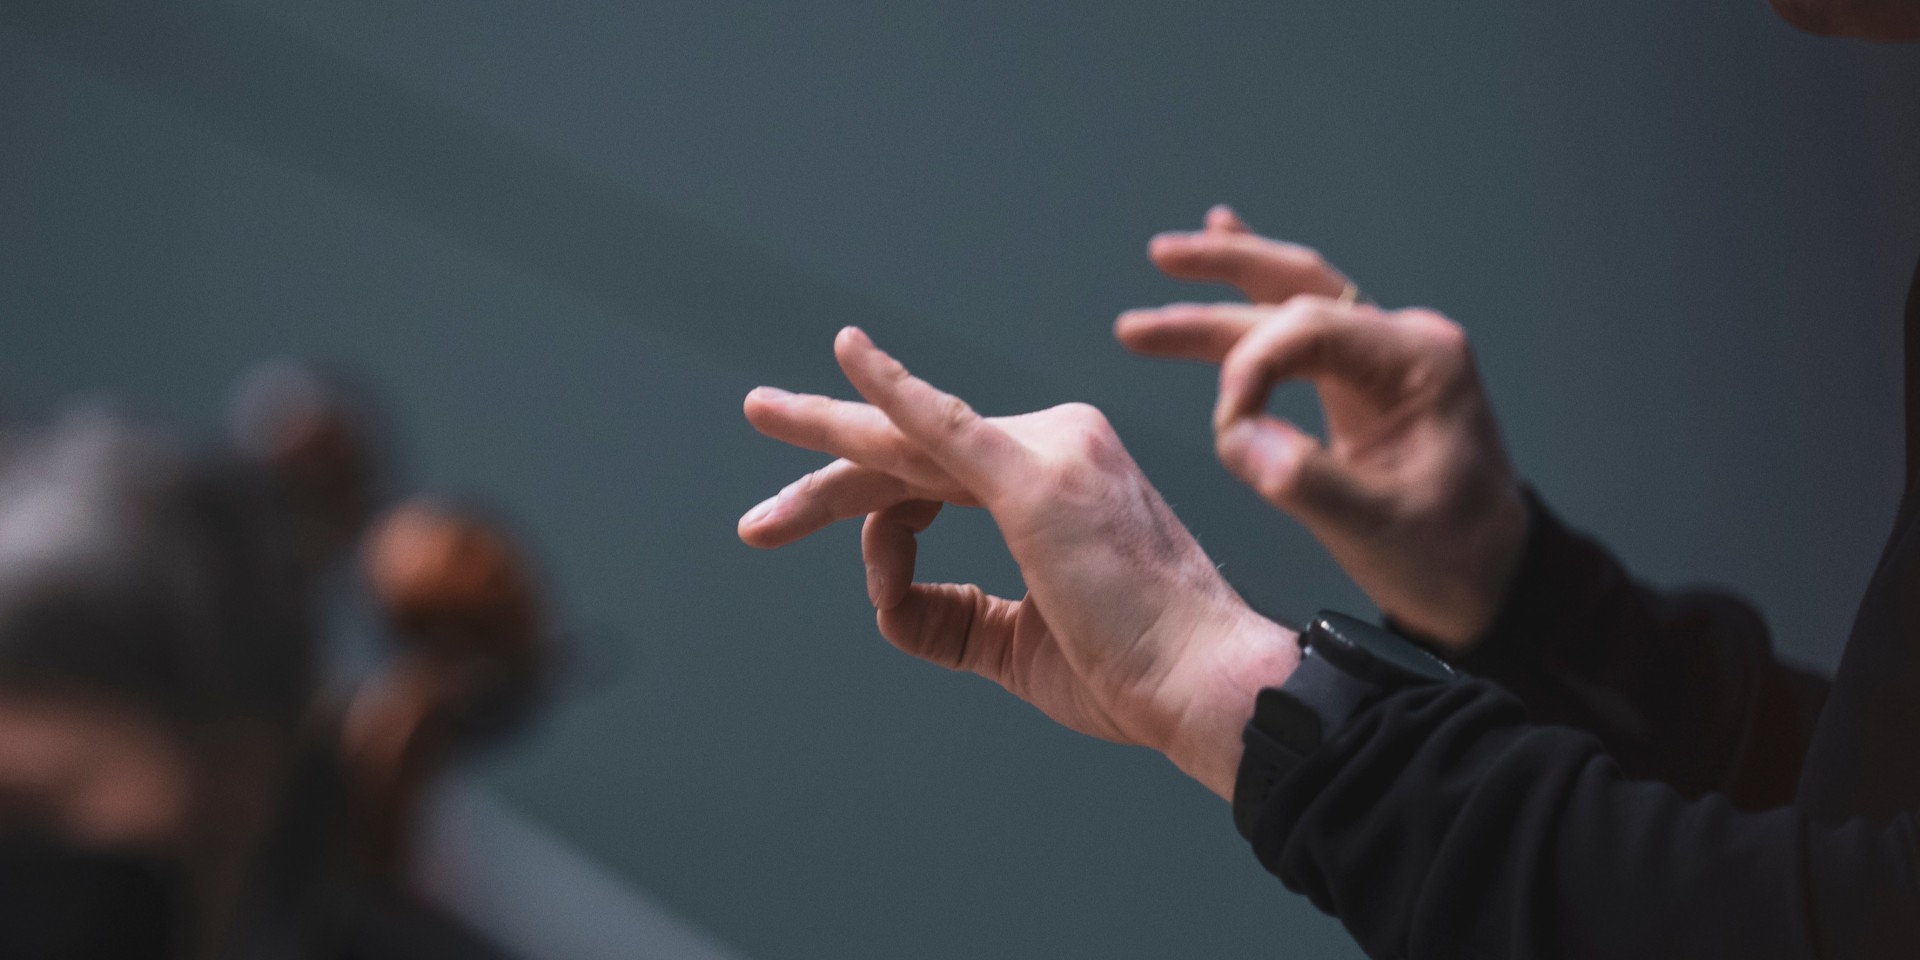 Dirigent leitet das Orchester an, Fokus auf die Hände, kein Gesicht zu sehen